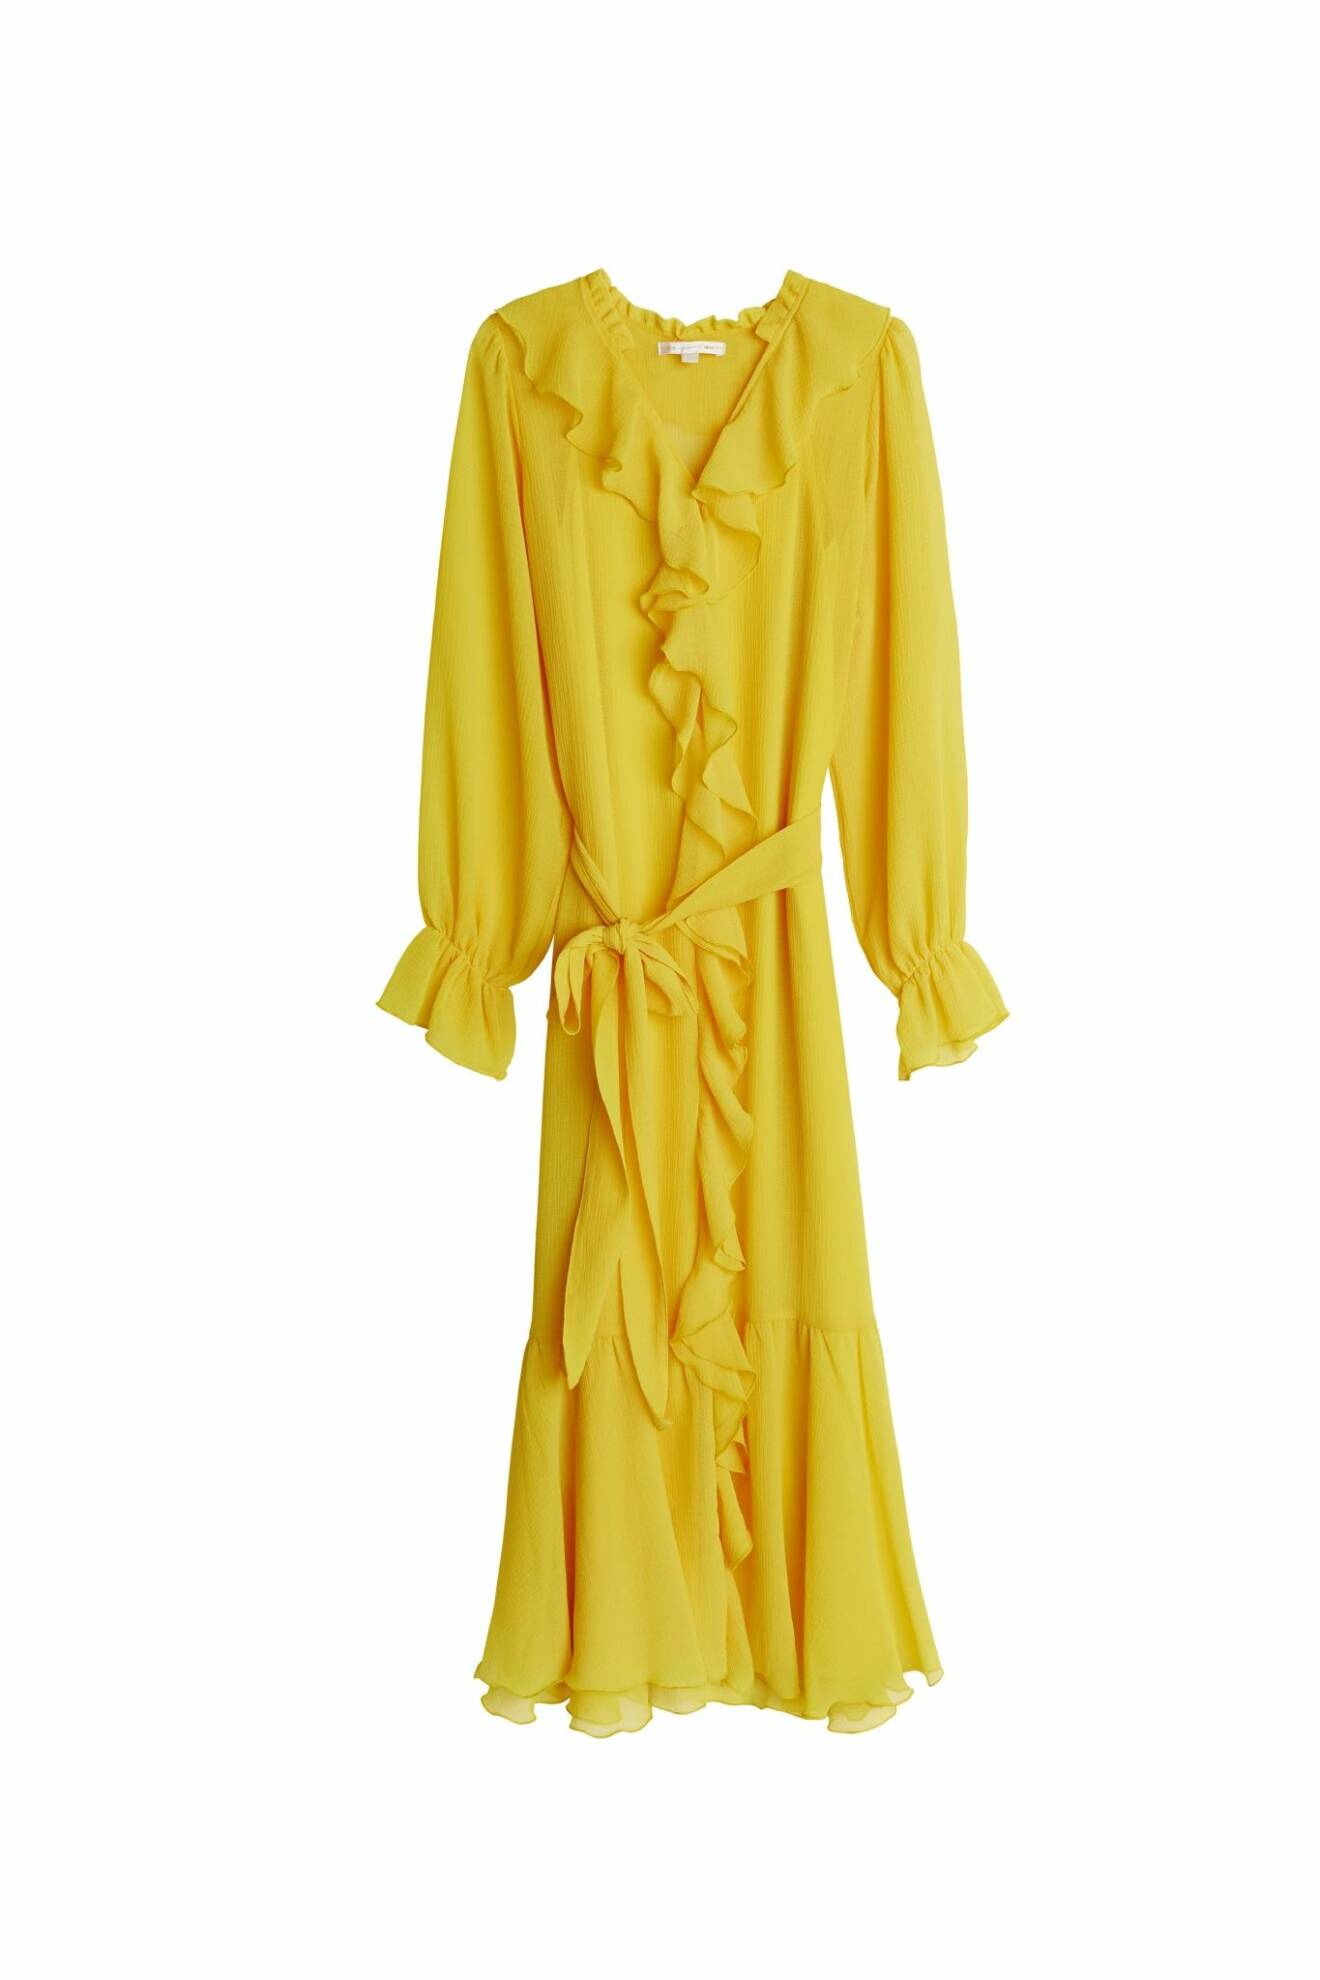 Maja Nilsson Lindelöf gör kollektion med Gina tricot – gul klänning